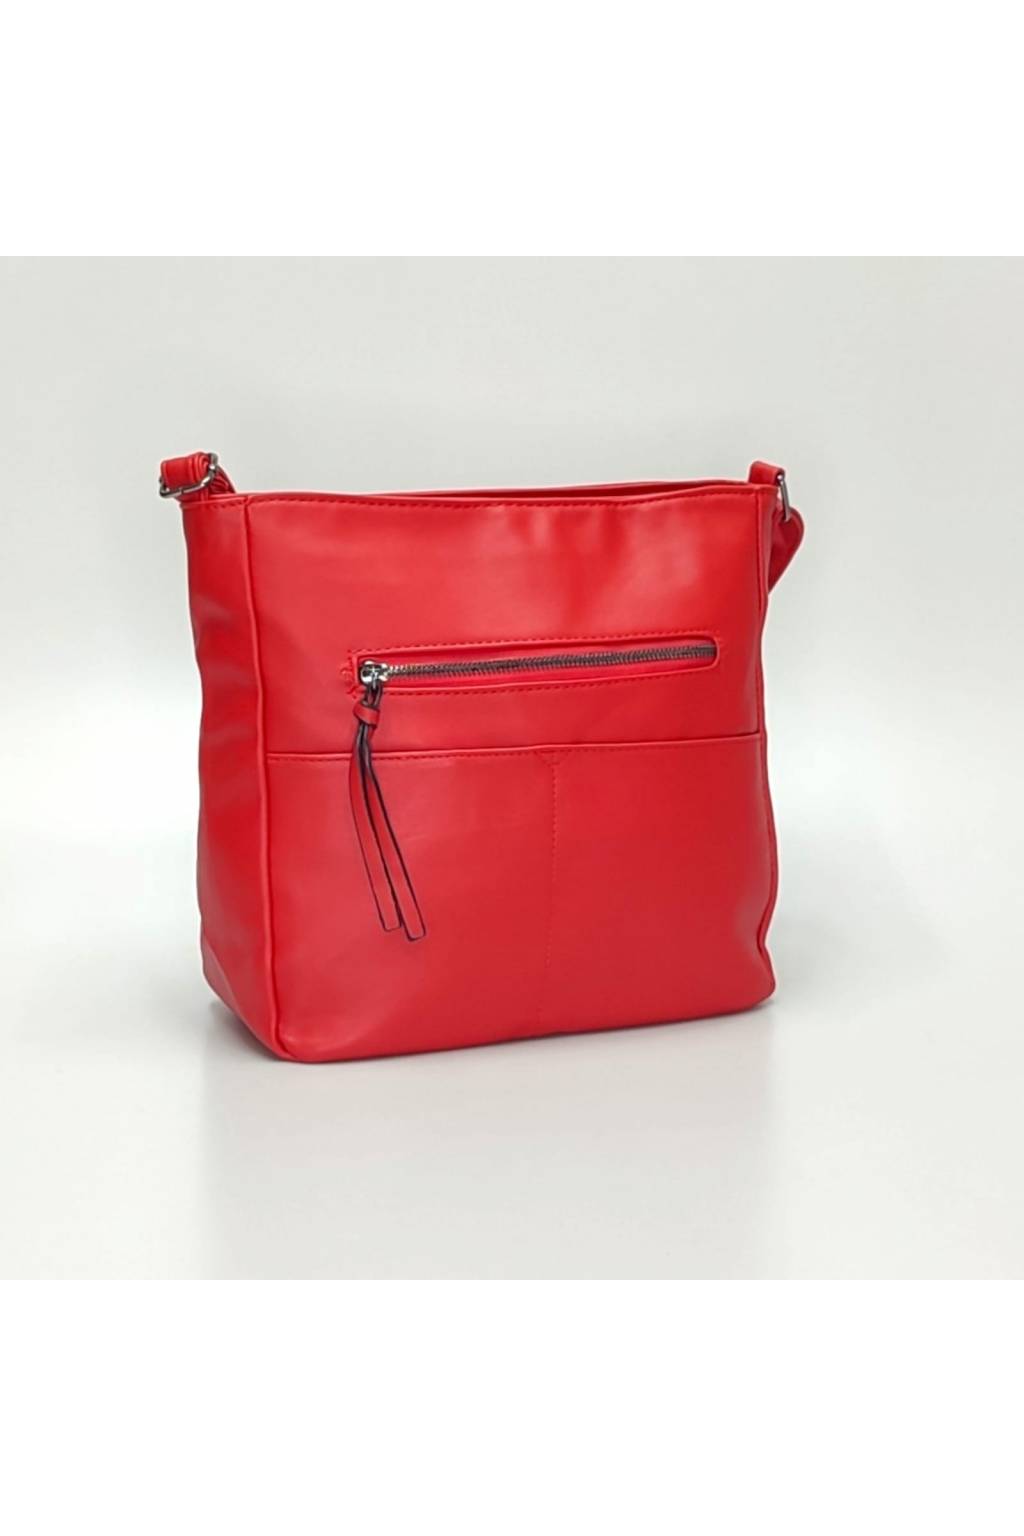 Dámská crossbody kabelka B7837 červená - Kabelky-vyprodej